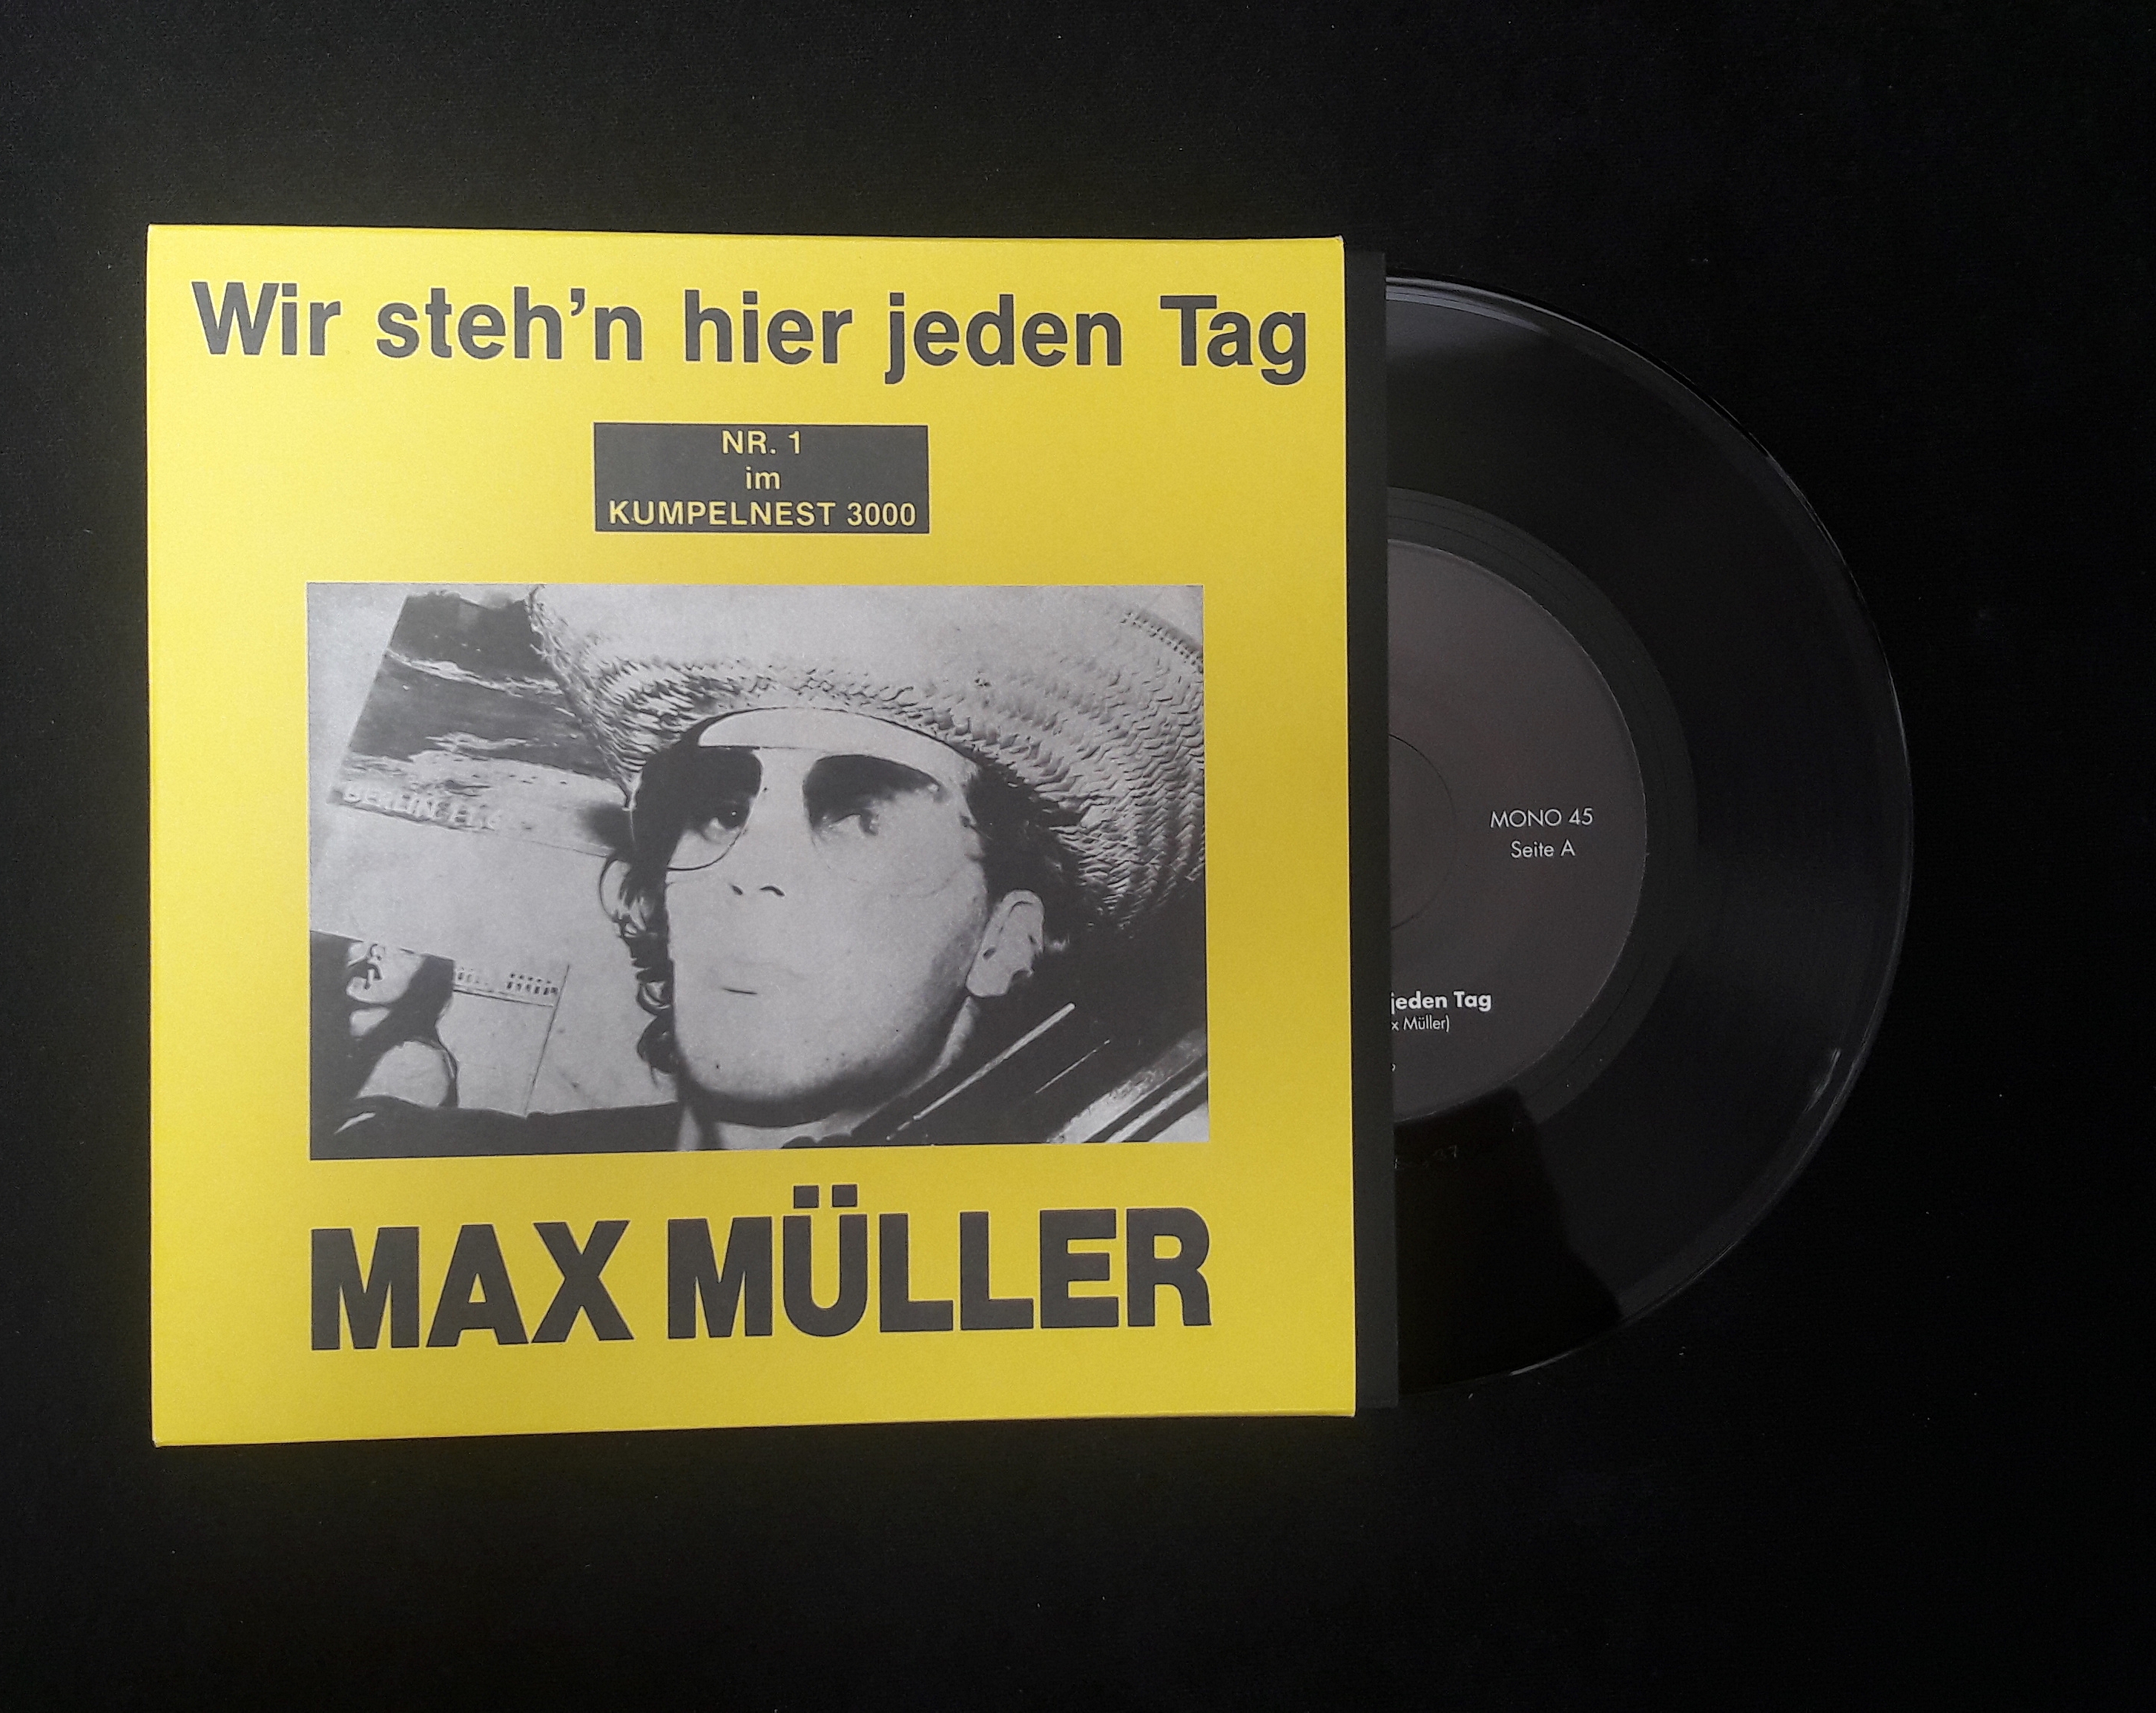 Max Müller - Wir steh'n hier jeden Tag  7" (Slowboy Schallplatten) 